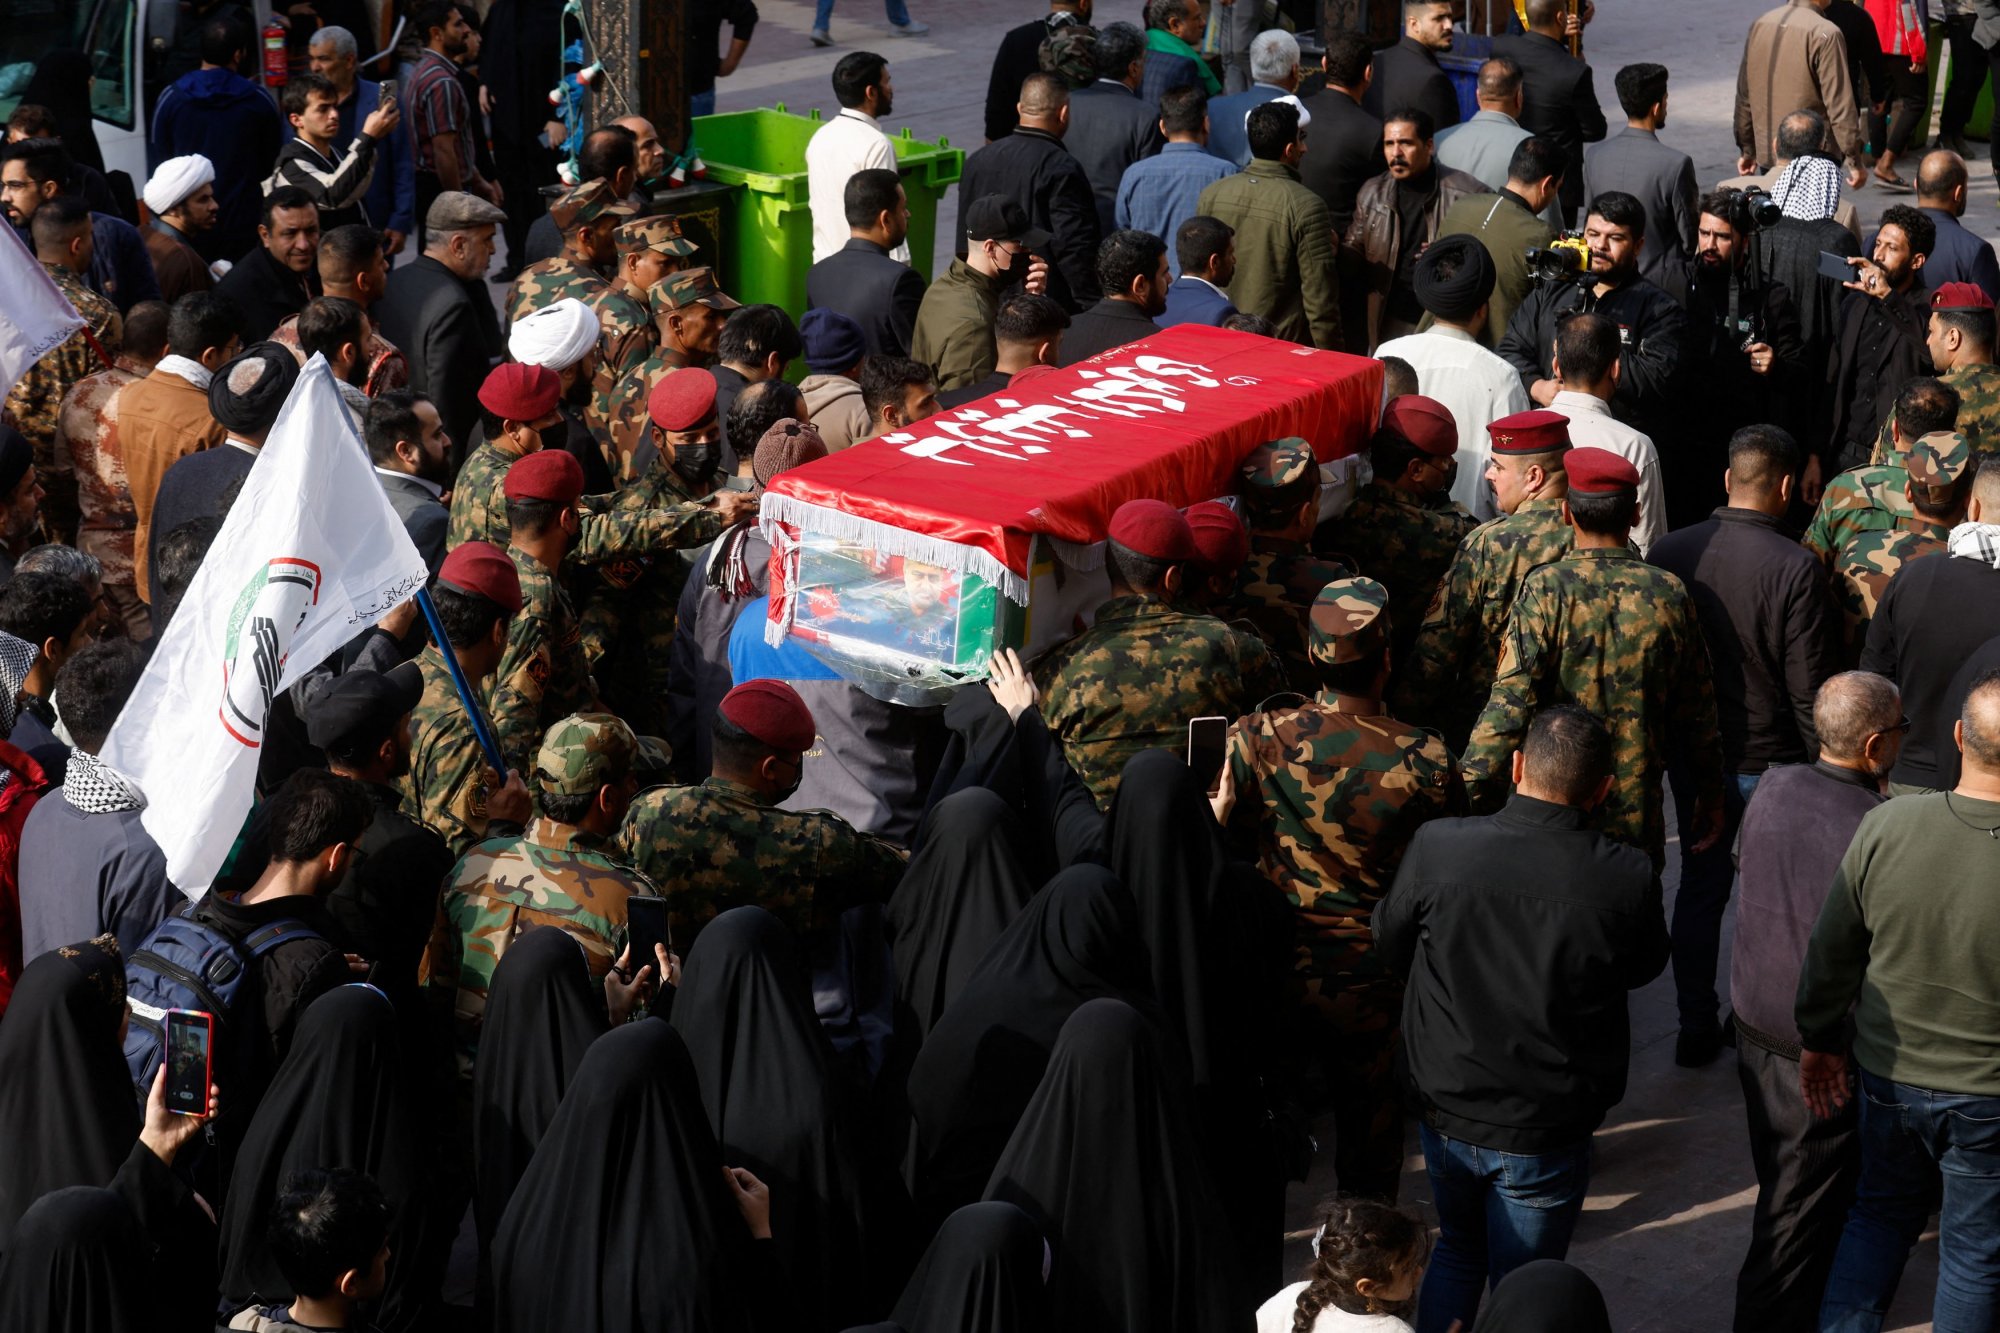 Φρουροί της Επανάστασης: «Θάνατος στην Αμερική και το Ισραήλ» - Οργή στην κηδεία του δολοφονημένου διοικητή